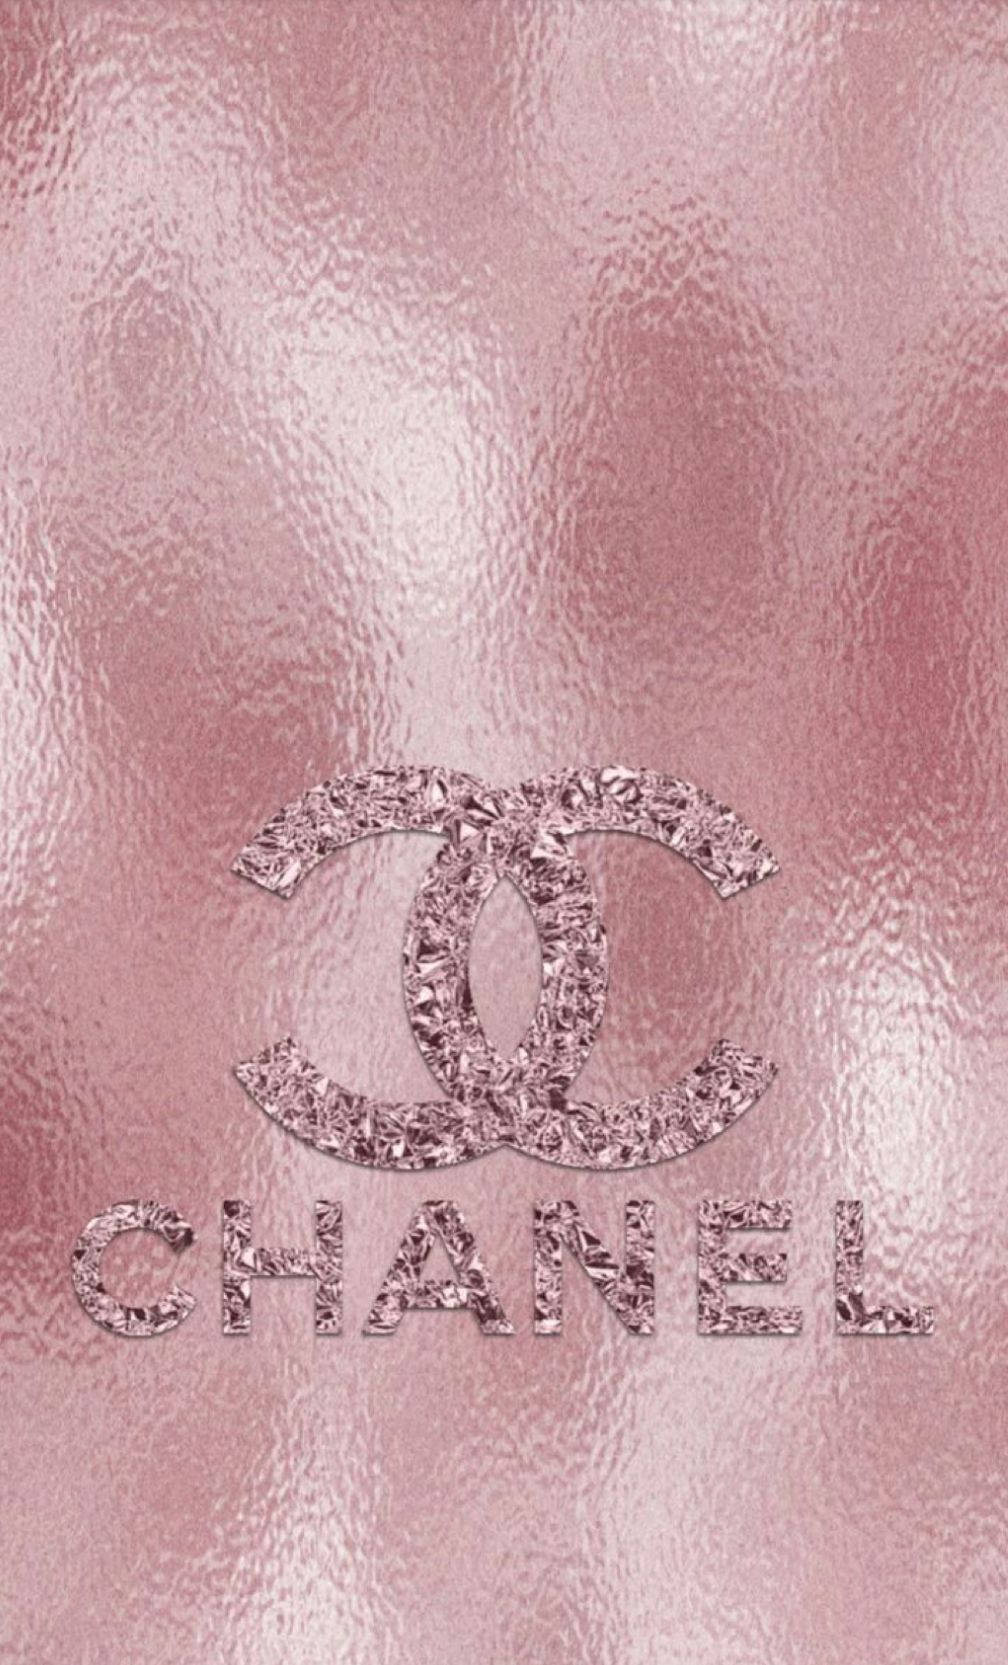 Logode Chanel Rosa Con Oro Rosa. Fondo de pantalla